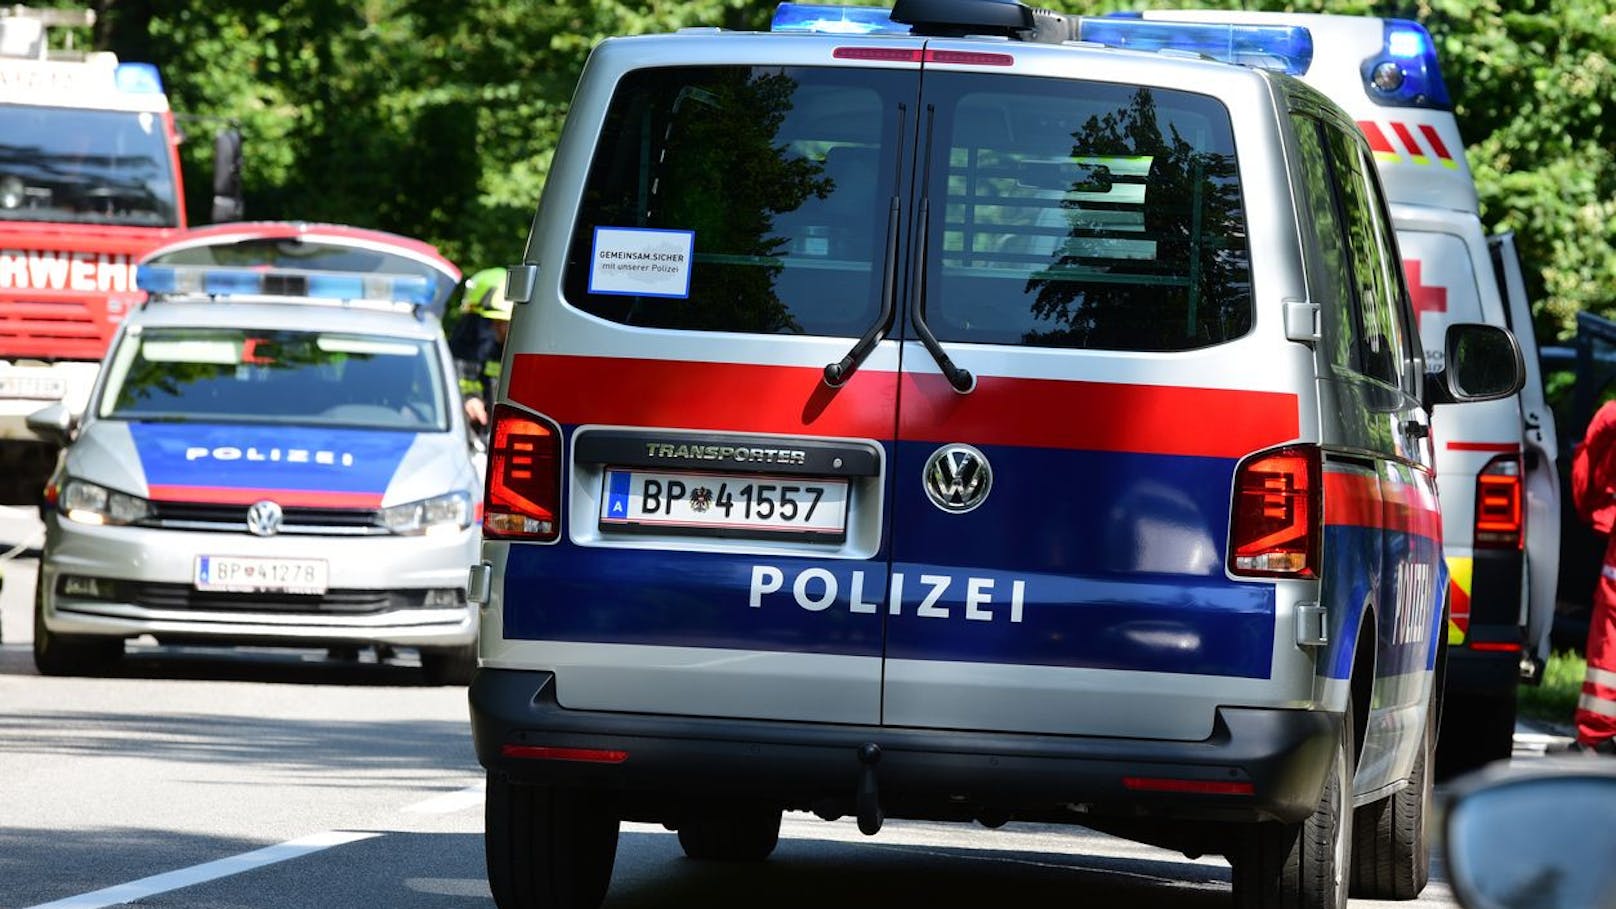 Groß-Razzia! Polizei entdeckt Koks, Geld und Waffen